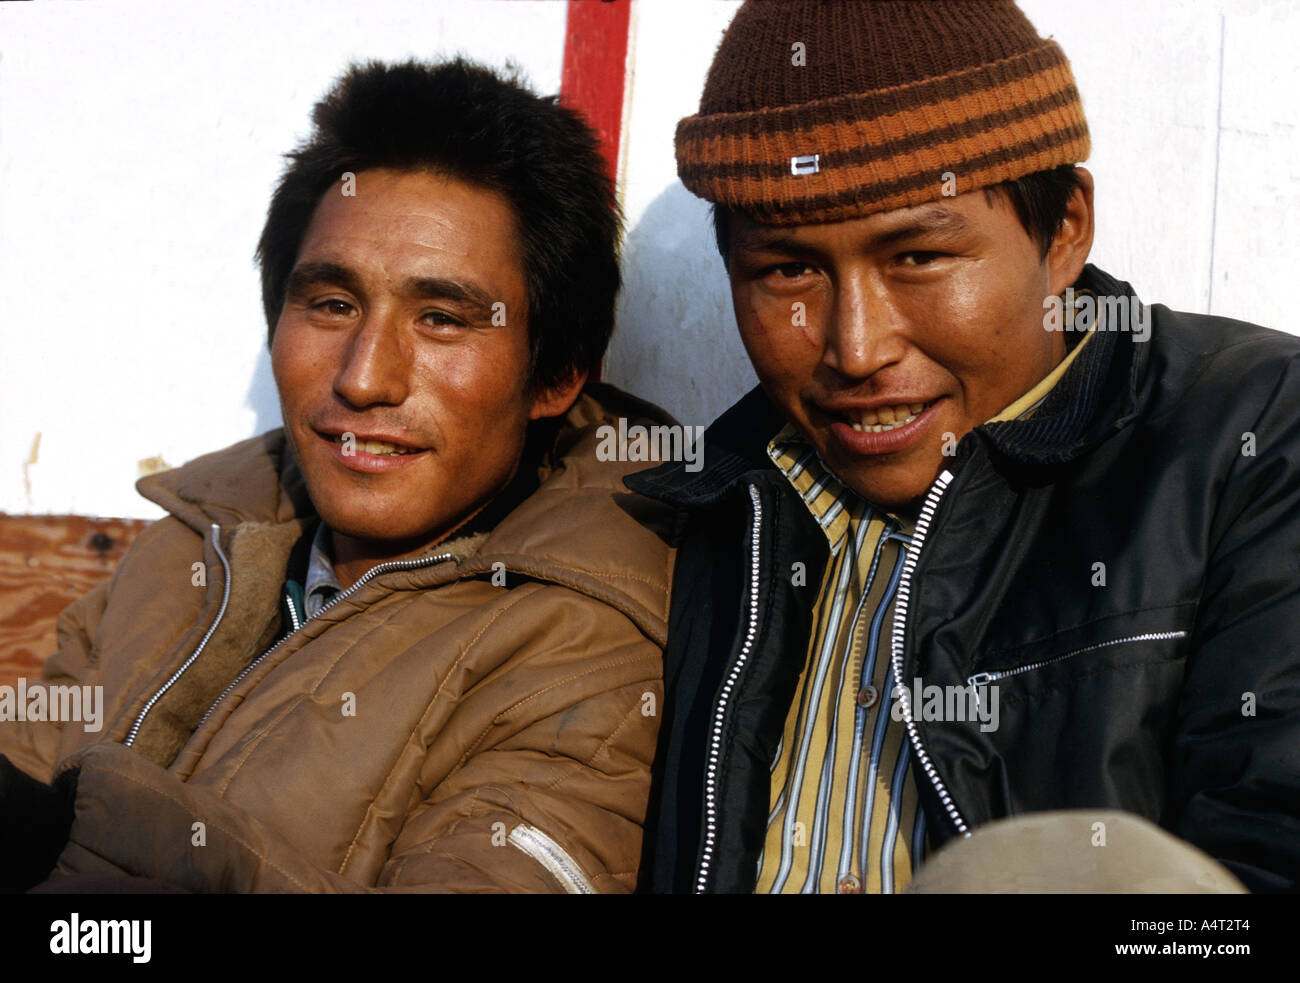 Les hommes inuits, sur l'île de Baffin, Territoires du Nord-Ouest Banque D'Images